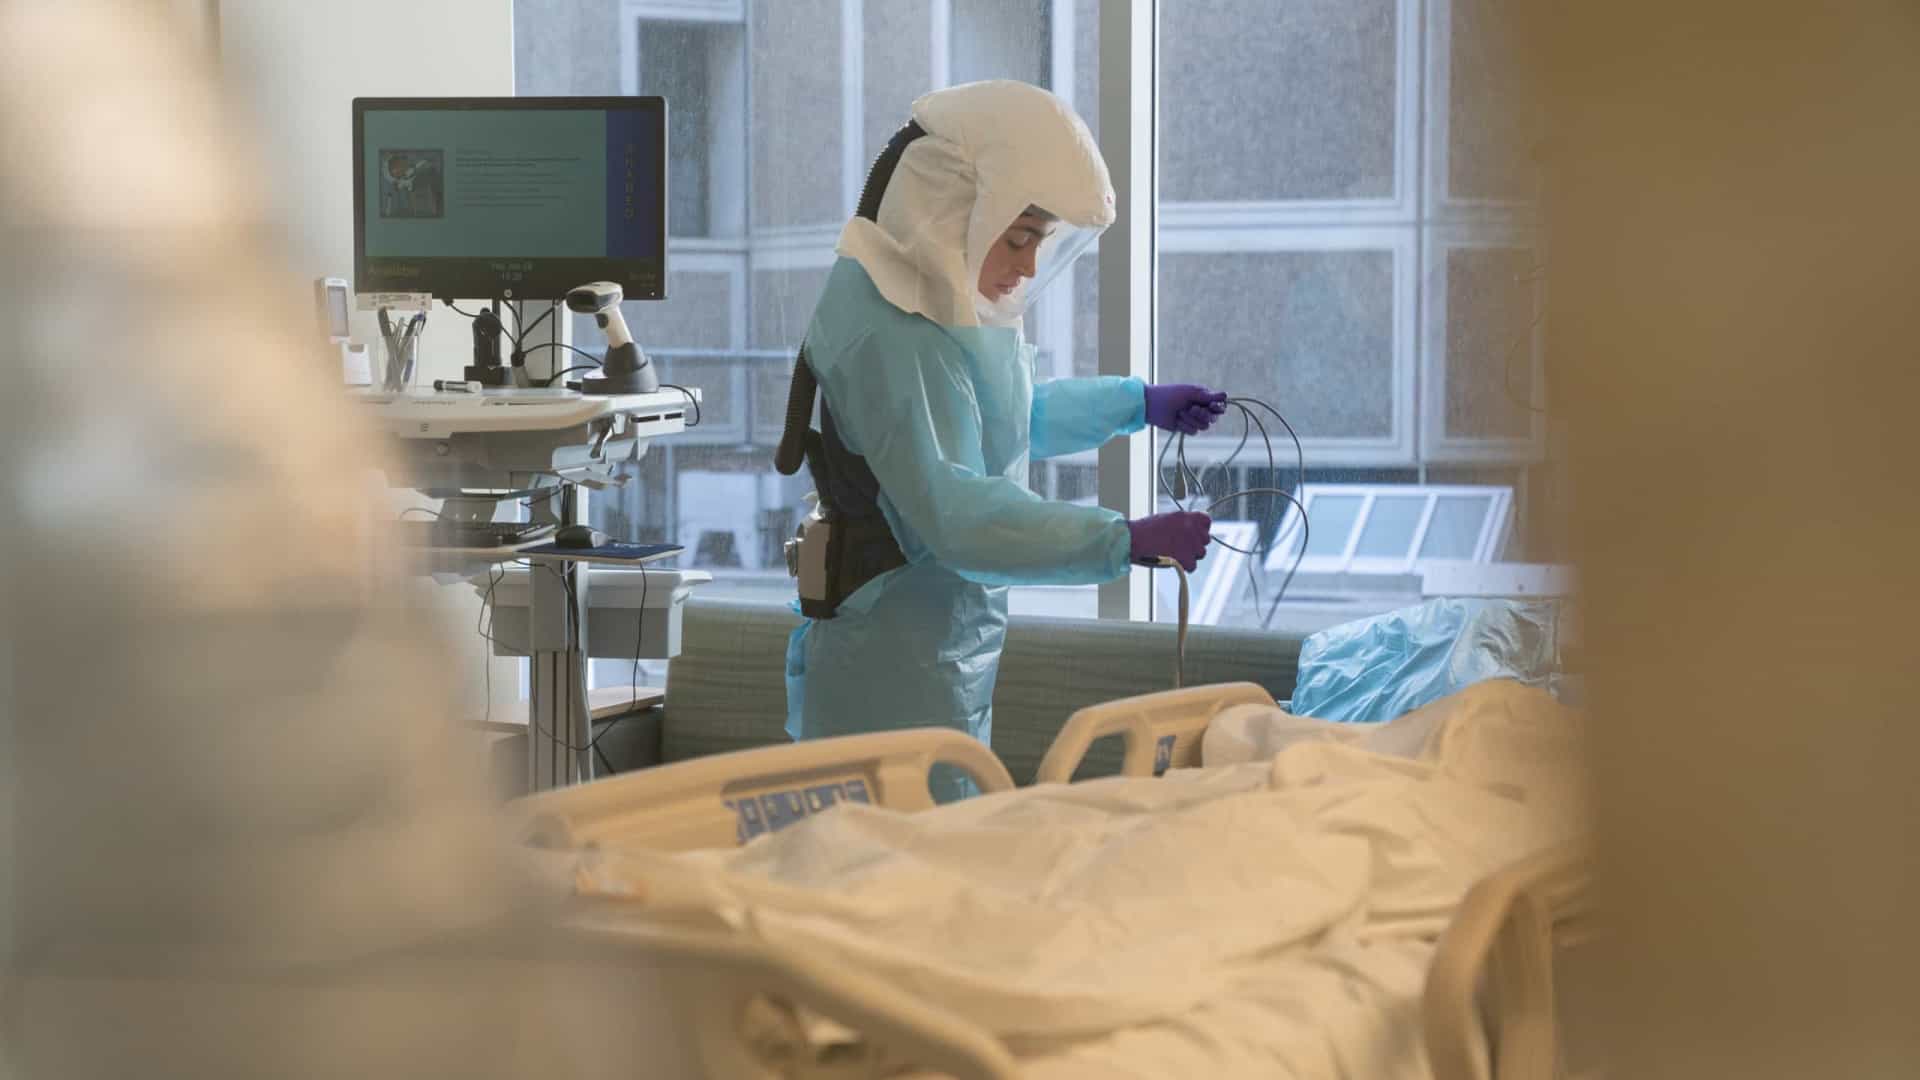 Covid-19 continua a pressionar sistemas hospitalares pelo mundo, alerta OMS